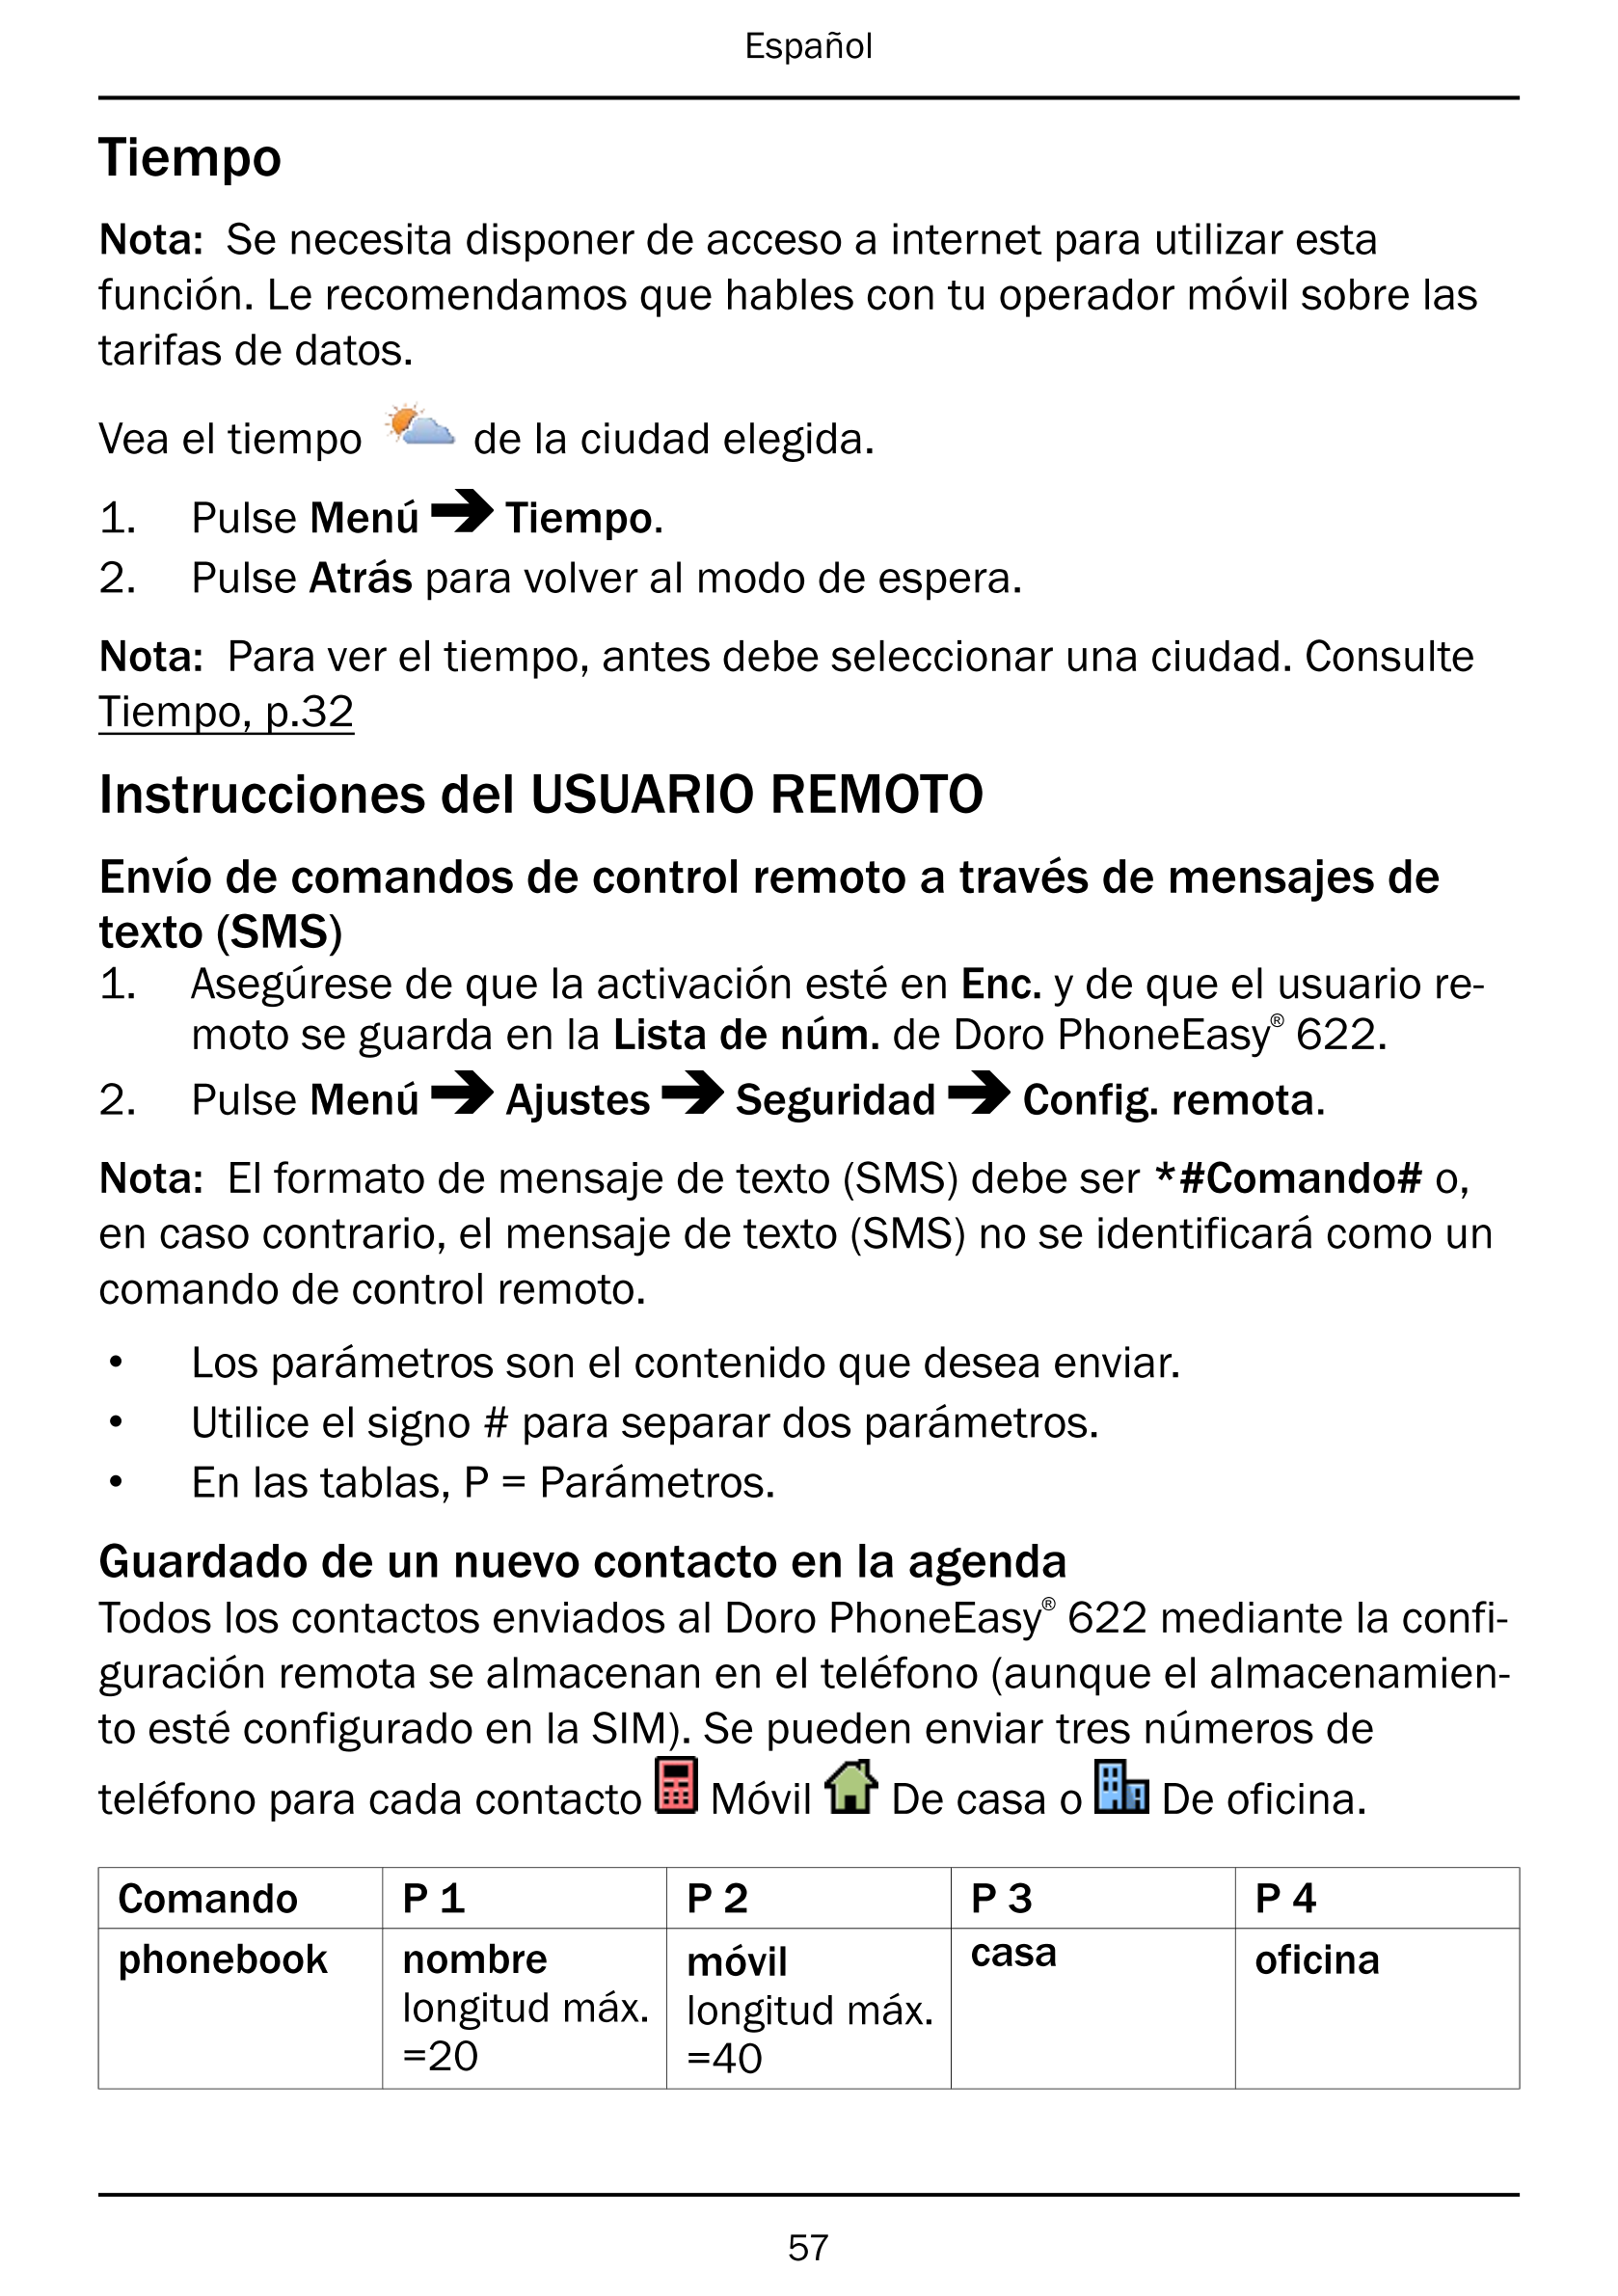 Español
Tiempo
Nota: Se necesita disponer de acceso a internet para utilizar esta
función. Le recomendamos que hables con tu ope